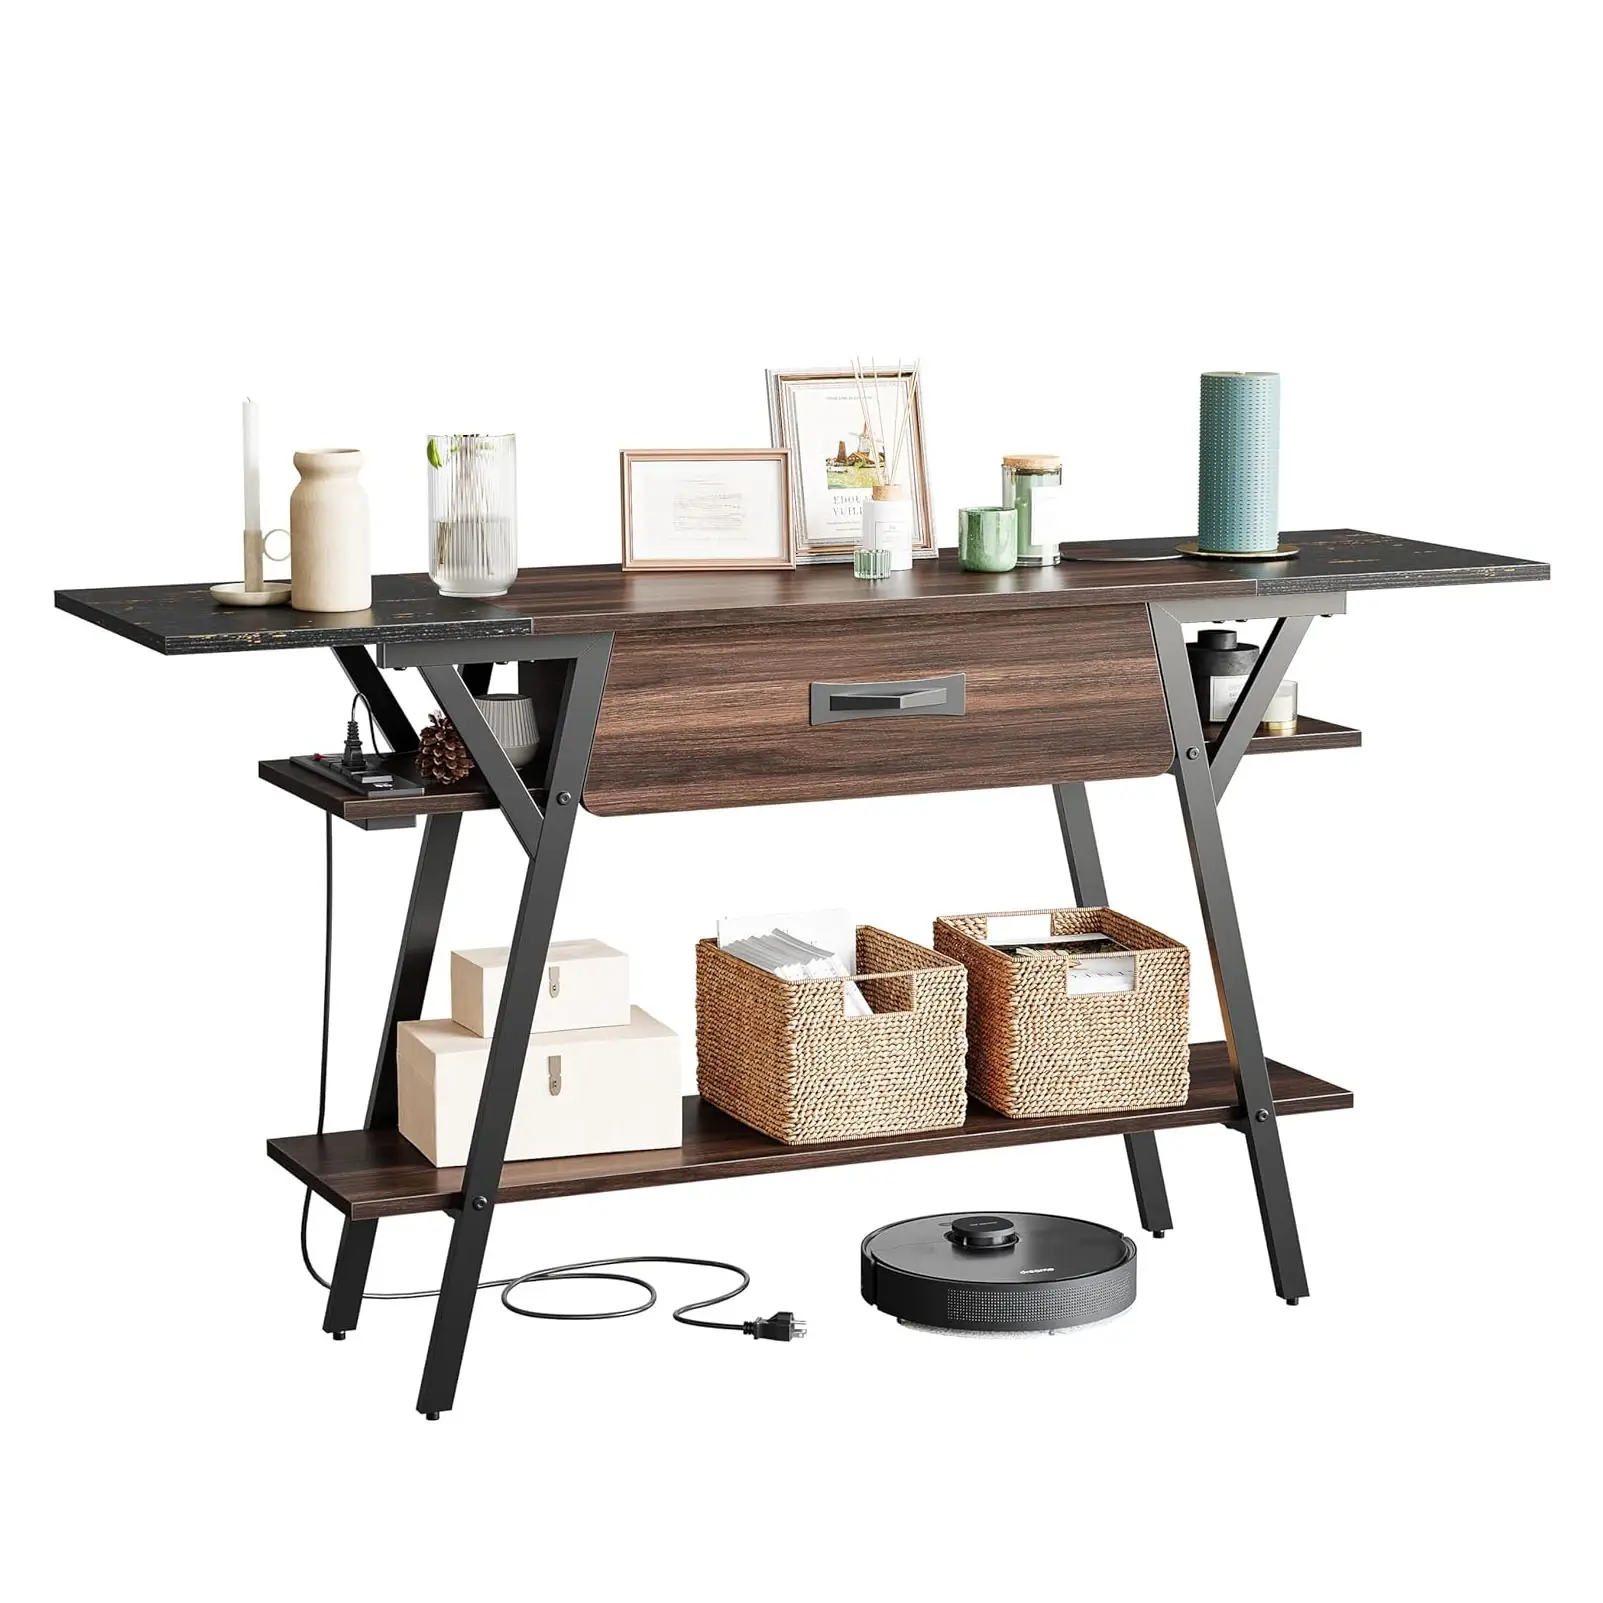 Couloir en bois moderne Table d'appoint tiroir de rangement Table console de luxe